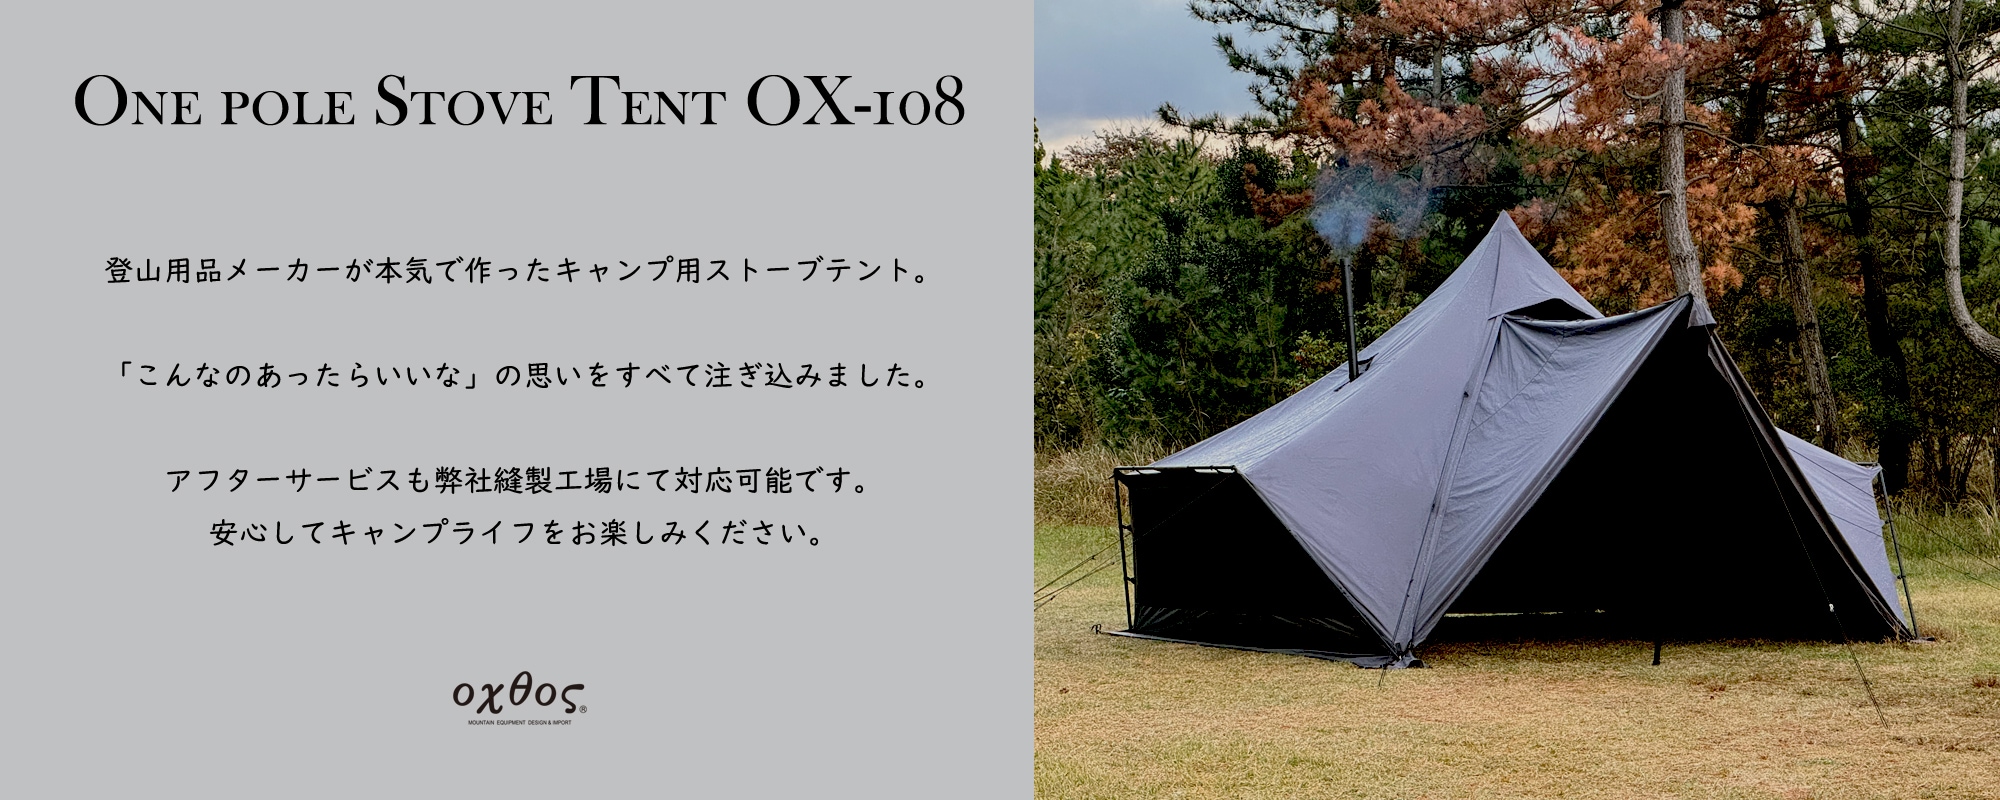 OX-108